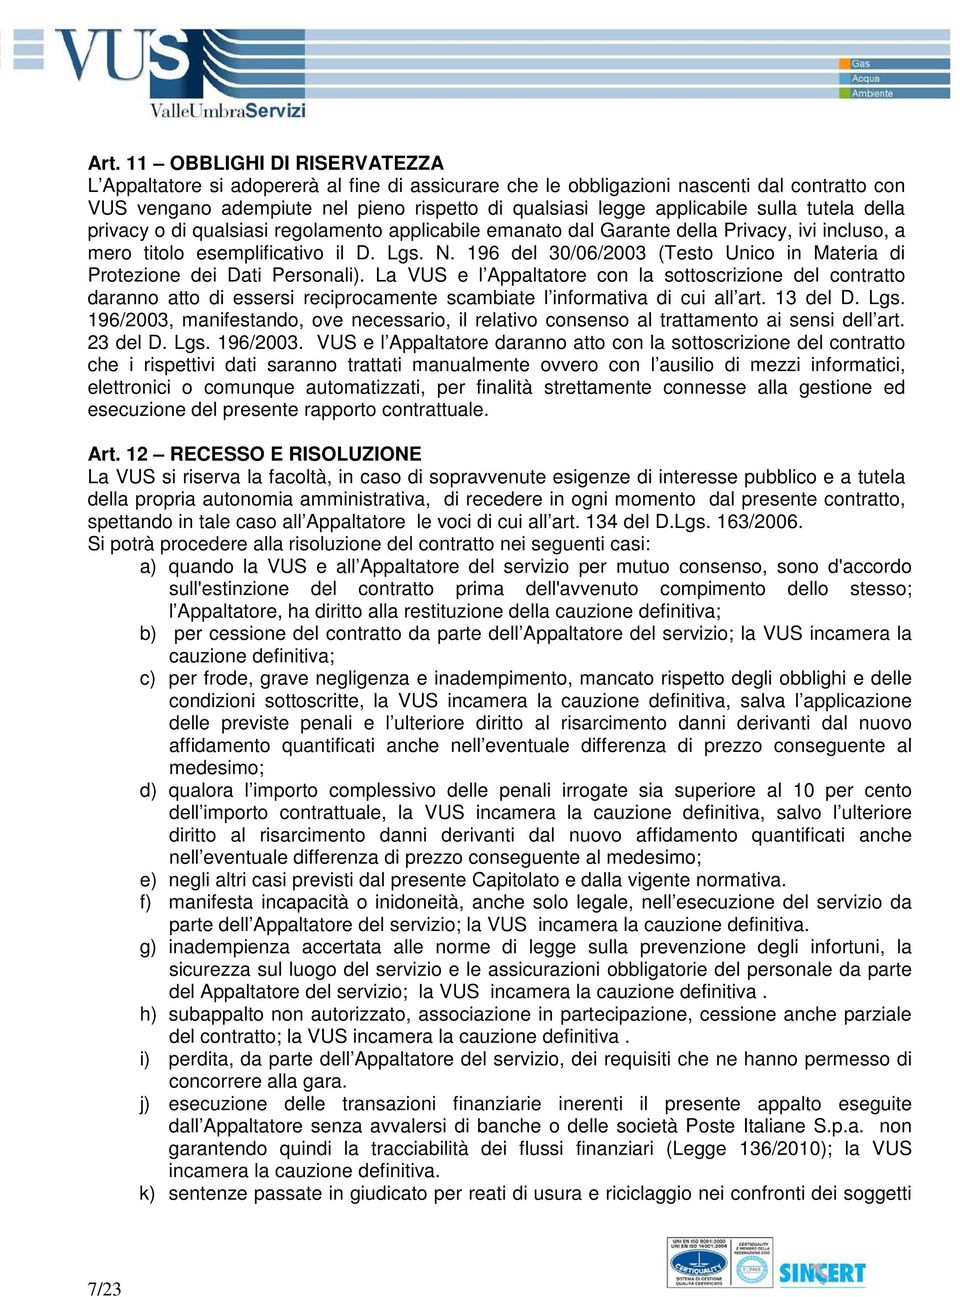 196 del 30/06/2003 (Testo Unico in Materia di Protezione dei Dati Personali).